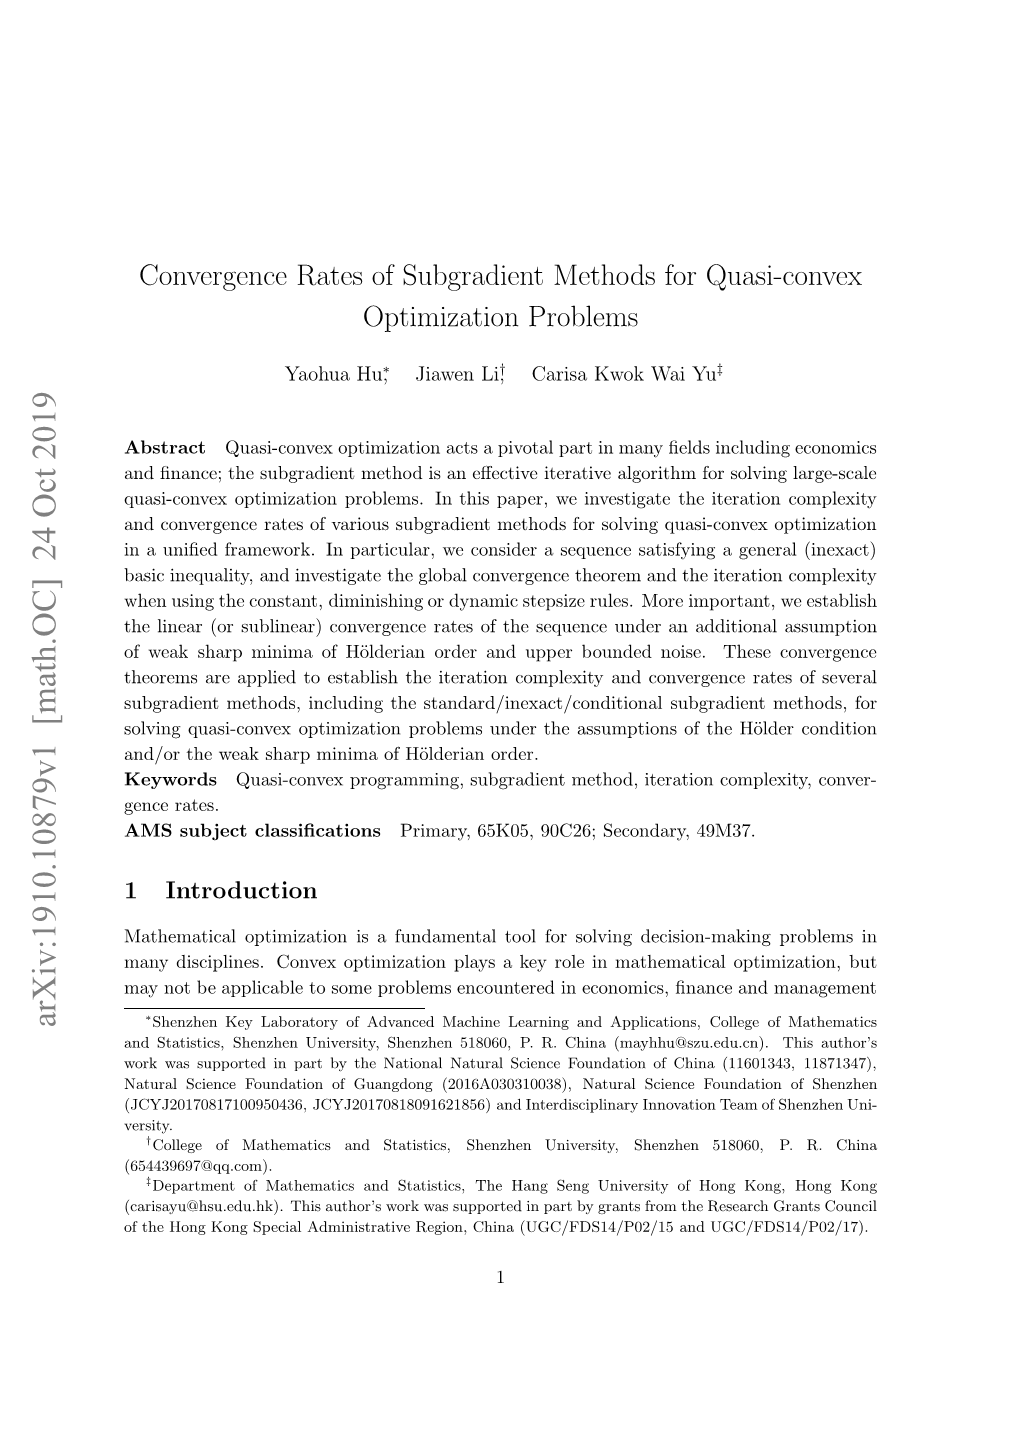 Convergence Rates of Subgradient Methods for Quasi-Convex